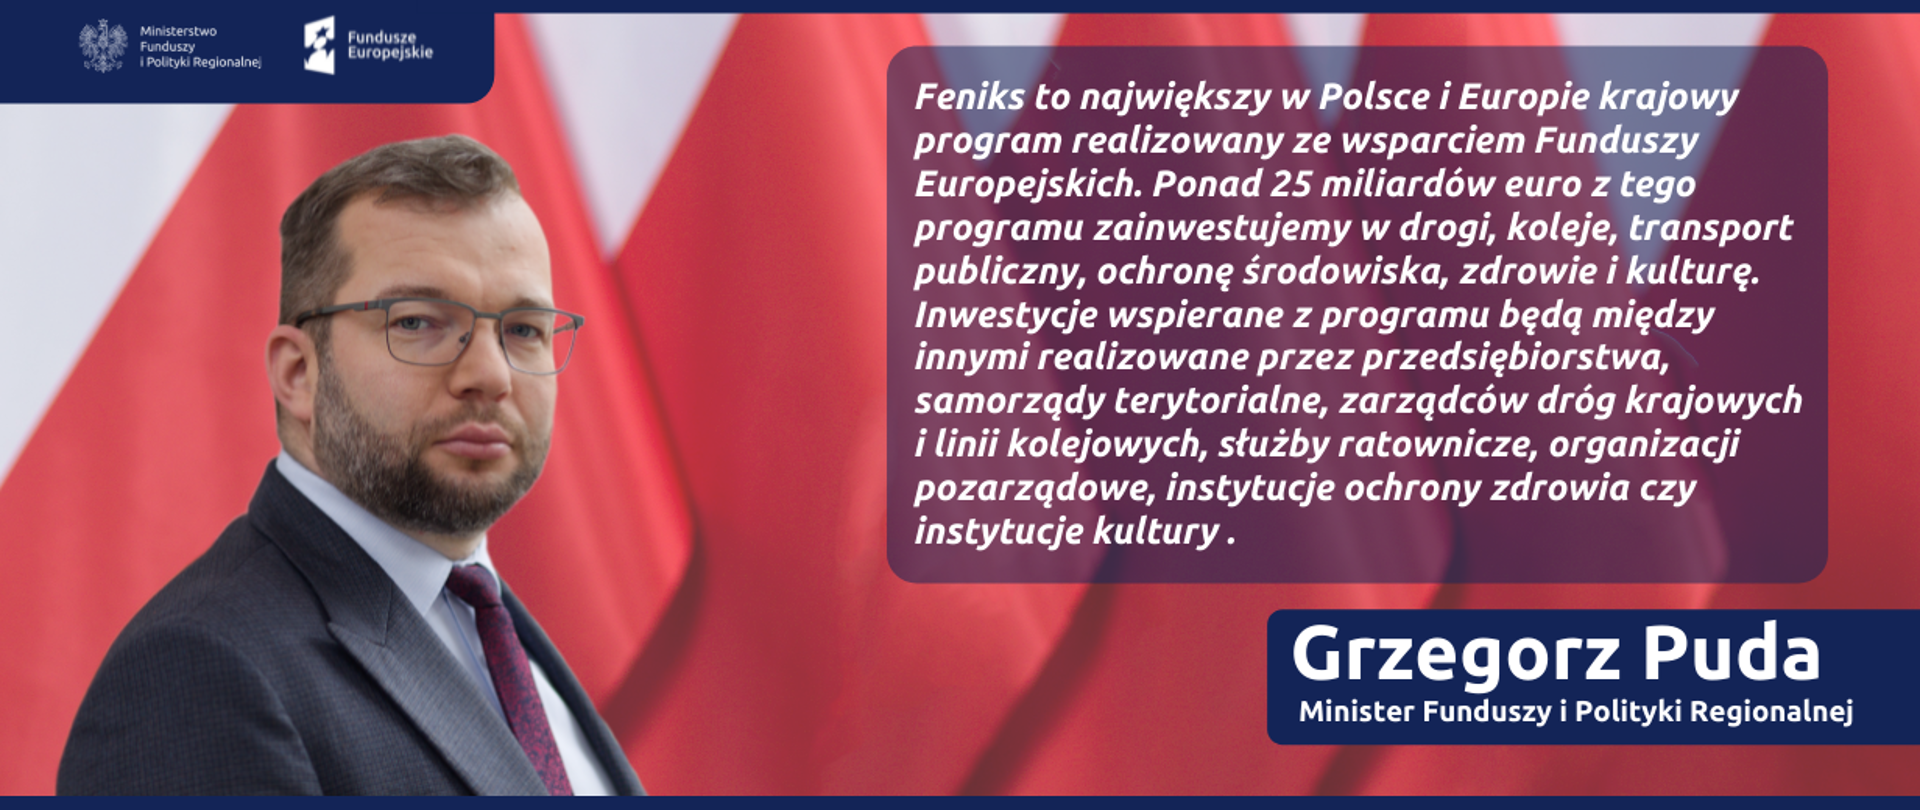 Na grafice zdjęcie ministra Grzegorza Pudy i jego cytat: "FEnIKS to największy w Polsce i Europie krajowy program realizowany ze wsparciem Funduszy Europejskich. Ponad 25 miliardów euro z tego programu zainwestujemy w drogi, koleje, transport publiczny, ochronę środowiska, zdrowie i kulturę. Inwestycje wspierane z programu będą między innymi realizowane przez przedsiębiorstwa, samorządy terytorialne, zarządców dróg krajowych i linii kolejowych, służby ratownicze, organizacji pozarządowe, instytucje ochrony zdrowia czy instytucje kultury".